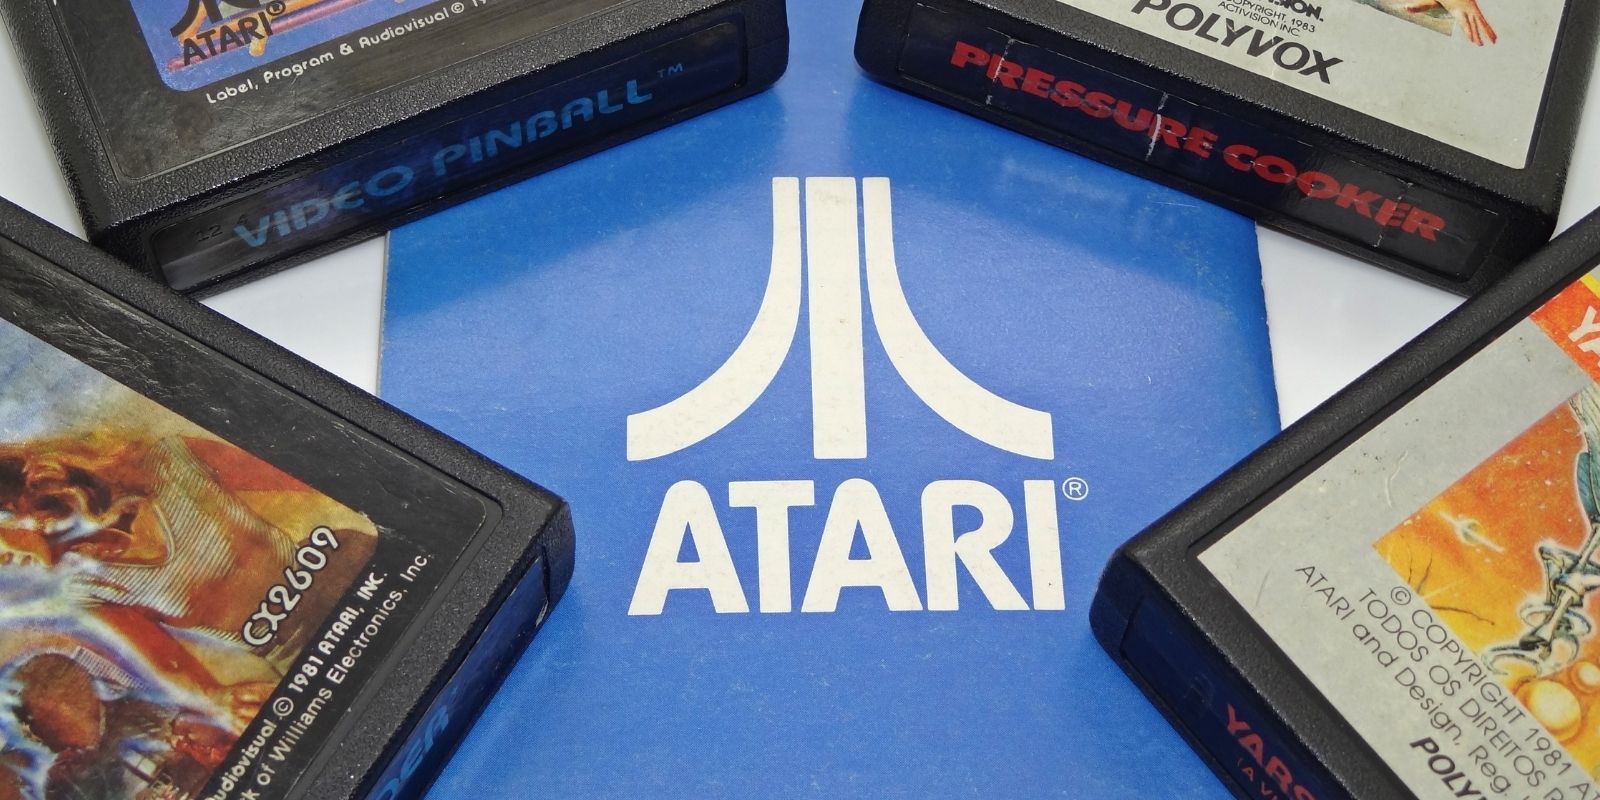 Atari formaliserar skapandet av sin Atari Blockchain-gren, som kommer att utveckla Atari Token